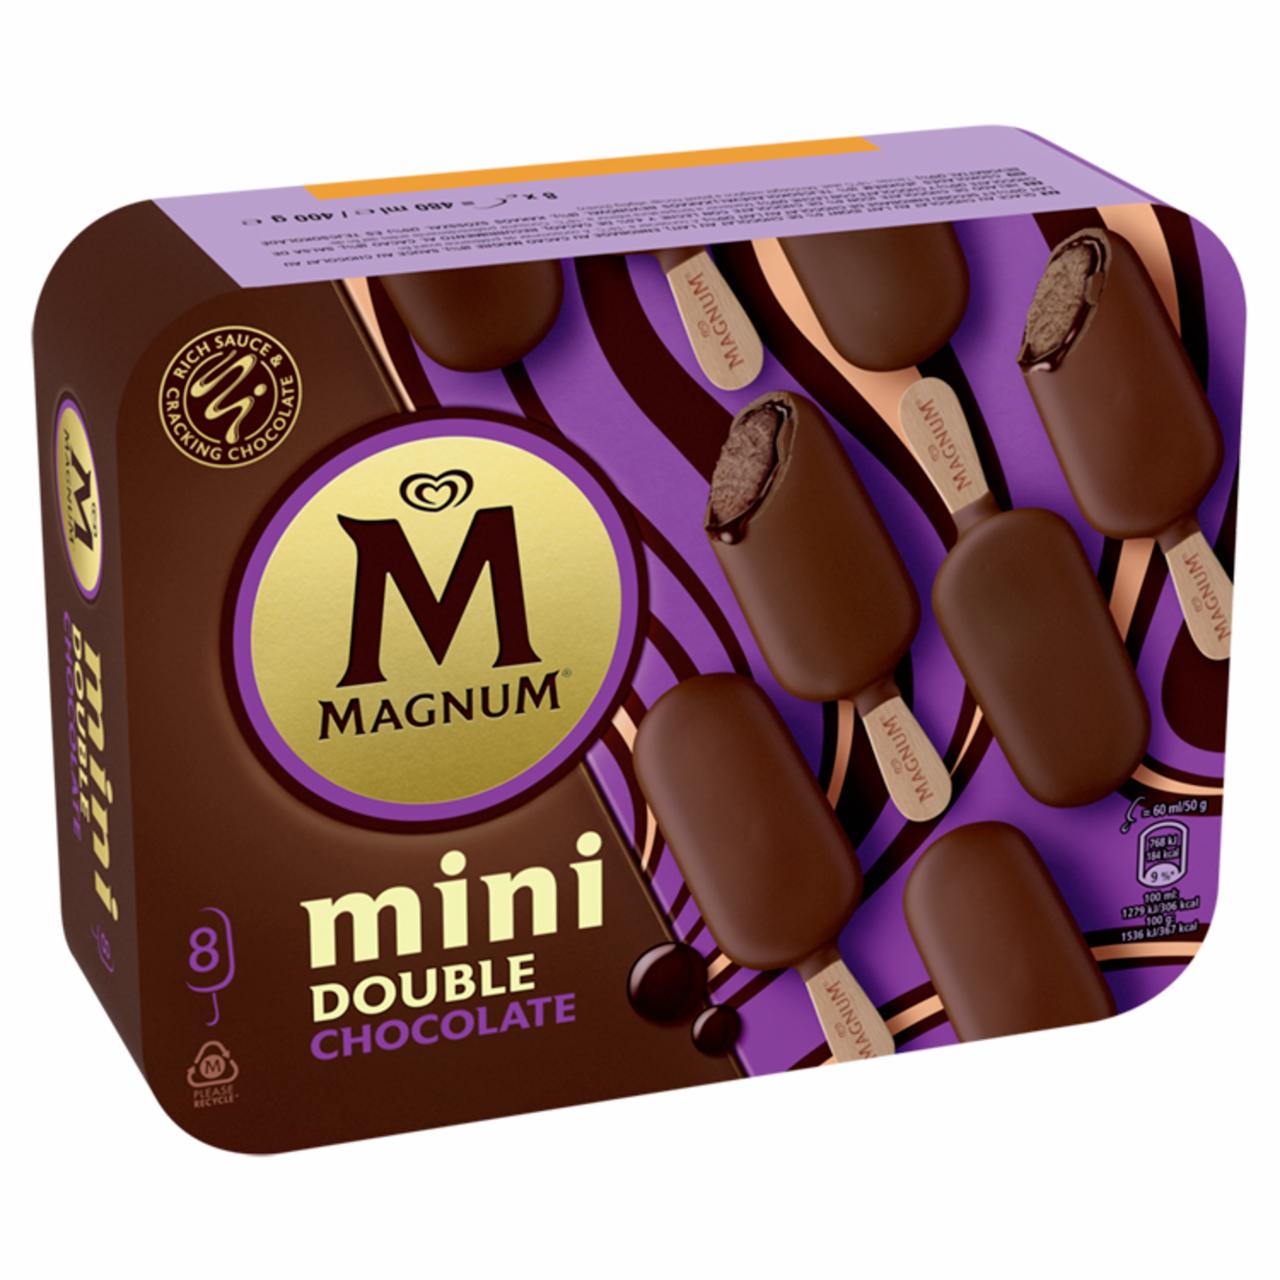 Képek - Magnum Mini multipack jégkrém Dupla Csokoládé 8 x 60 ml